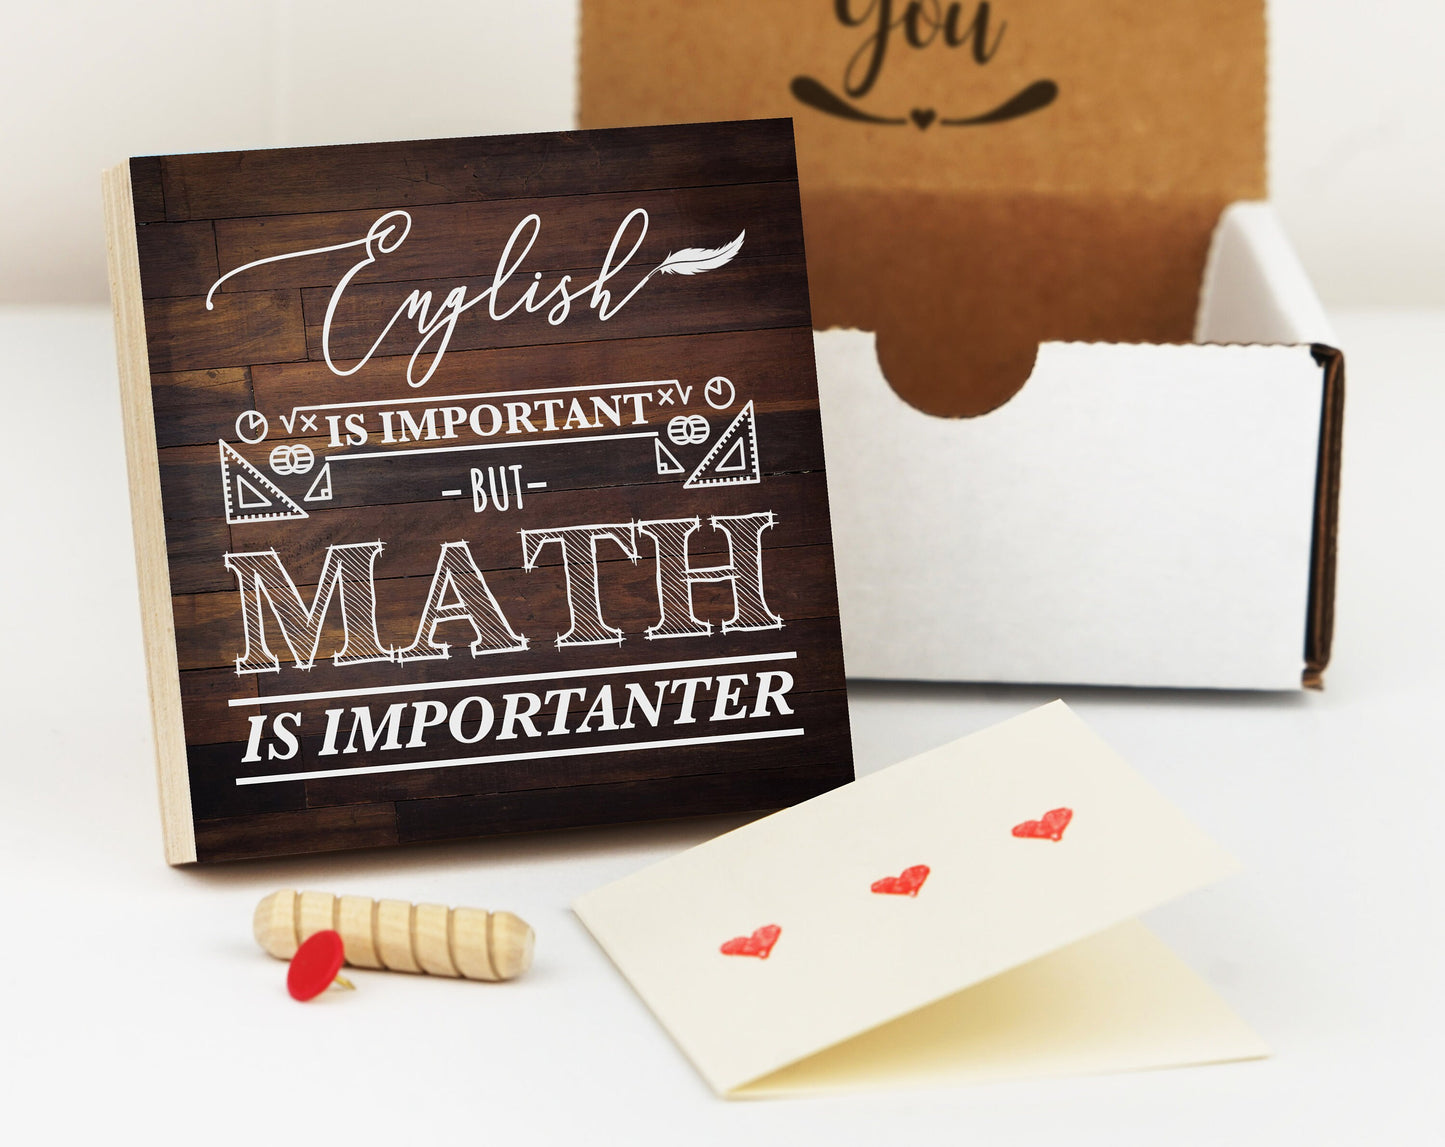 Math Teacher Gift Box - 4" or 6" Photo Block w/ Handwritten Card - Teacher Thank You Gift - Teacher Desk Frame - Funny Math